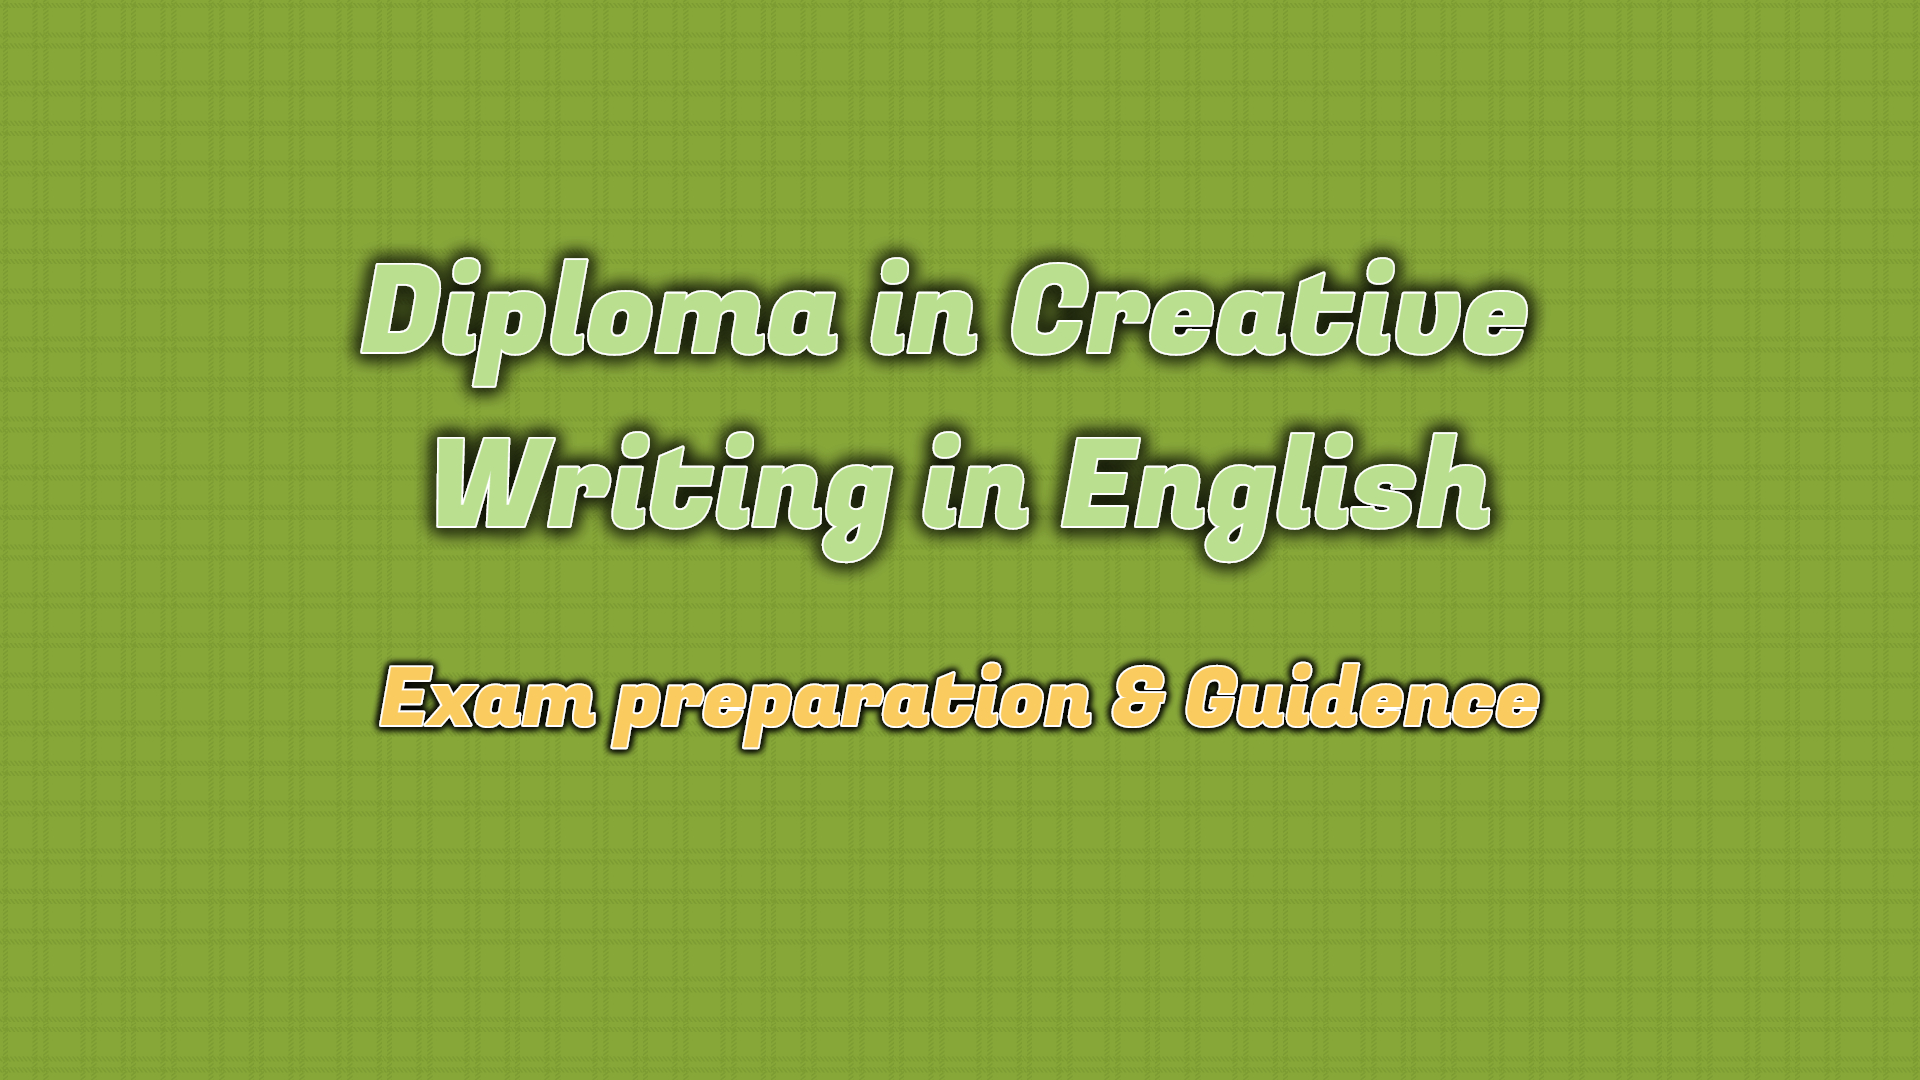 diploma in creative writing in english jobs